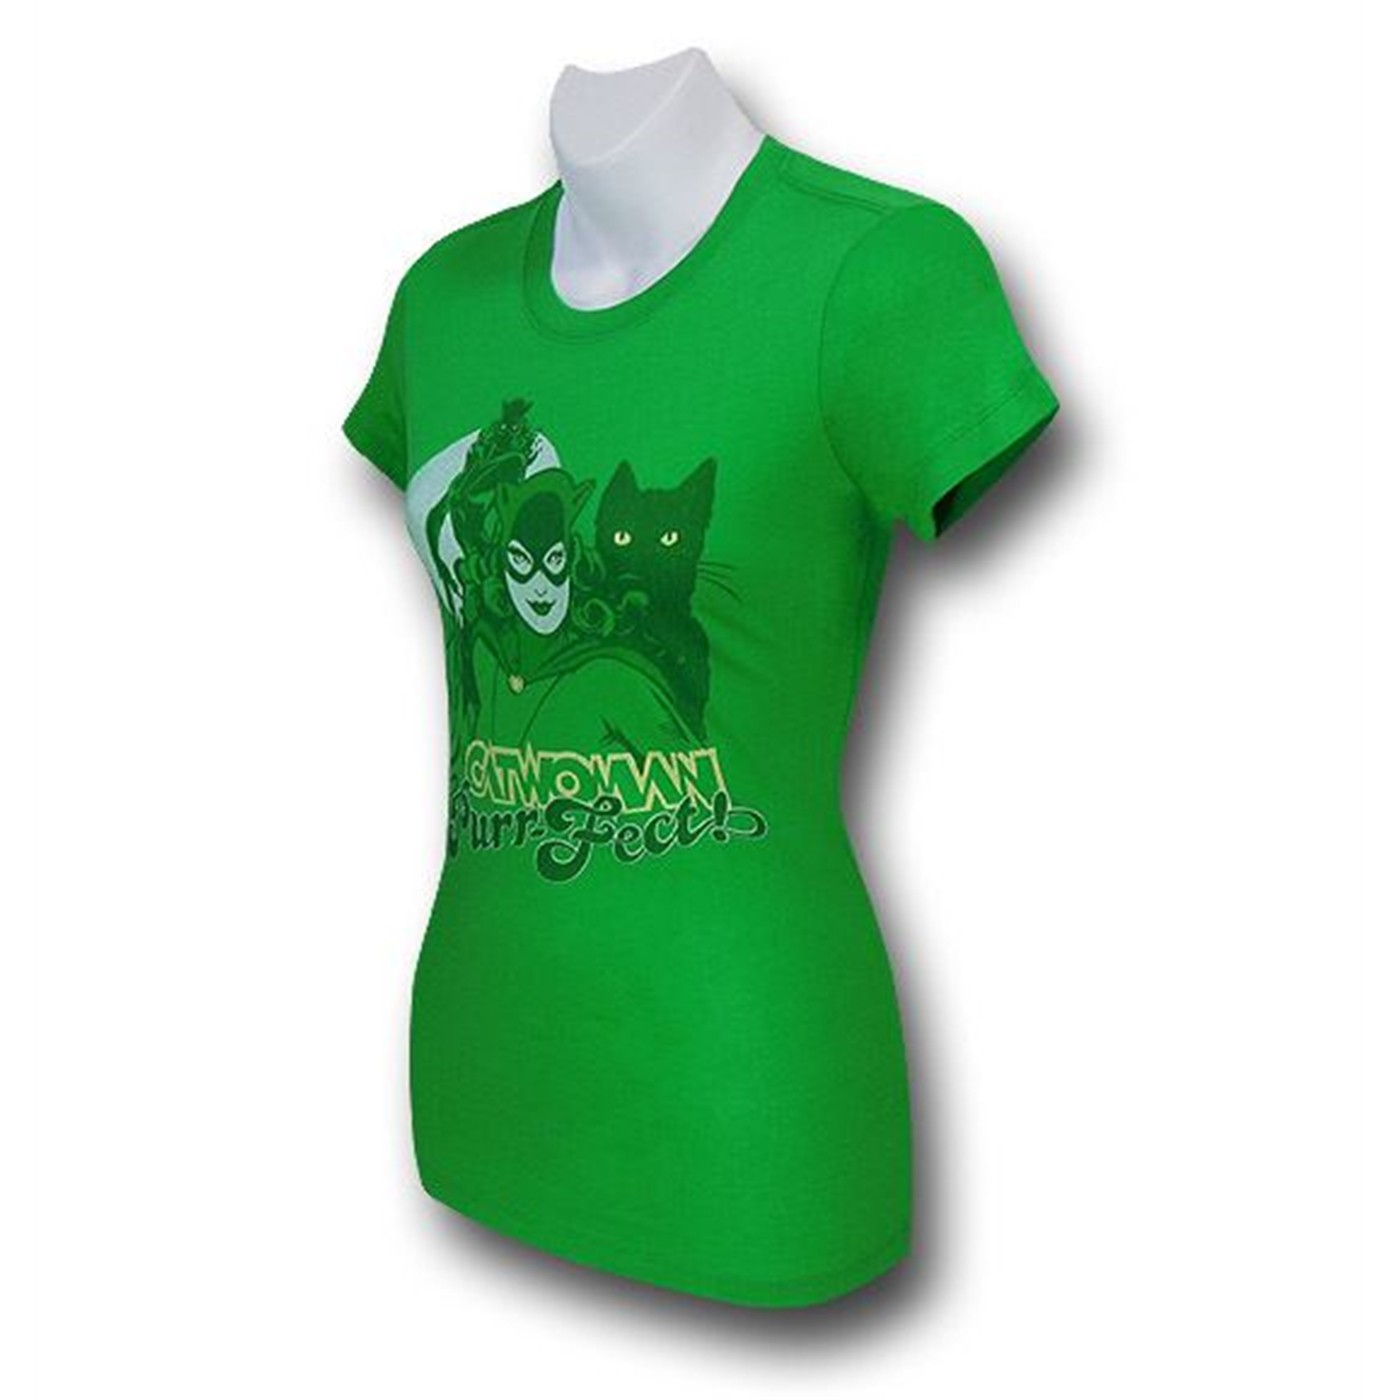 Catwoman Purr-Fect Women's T-Shirt